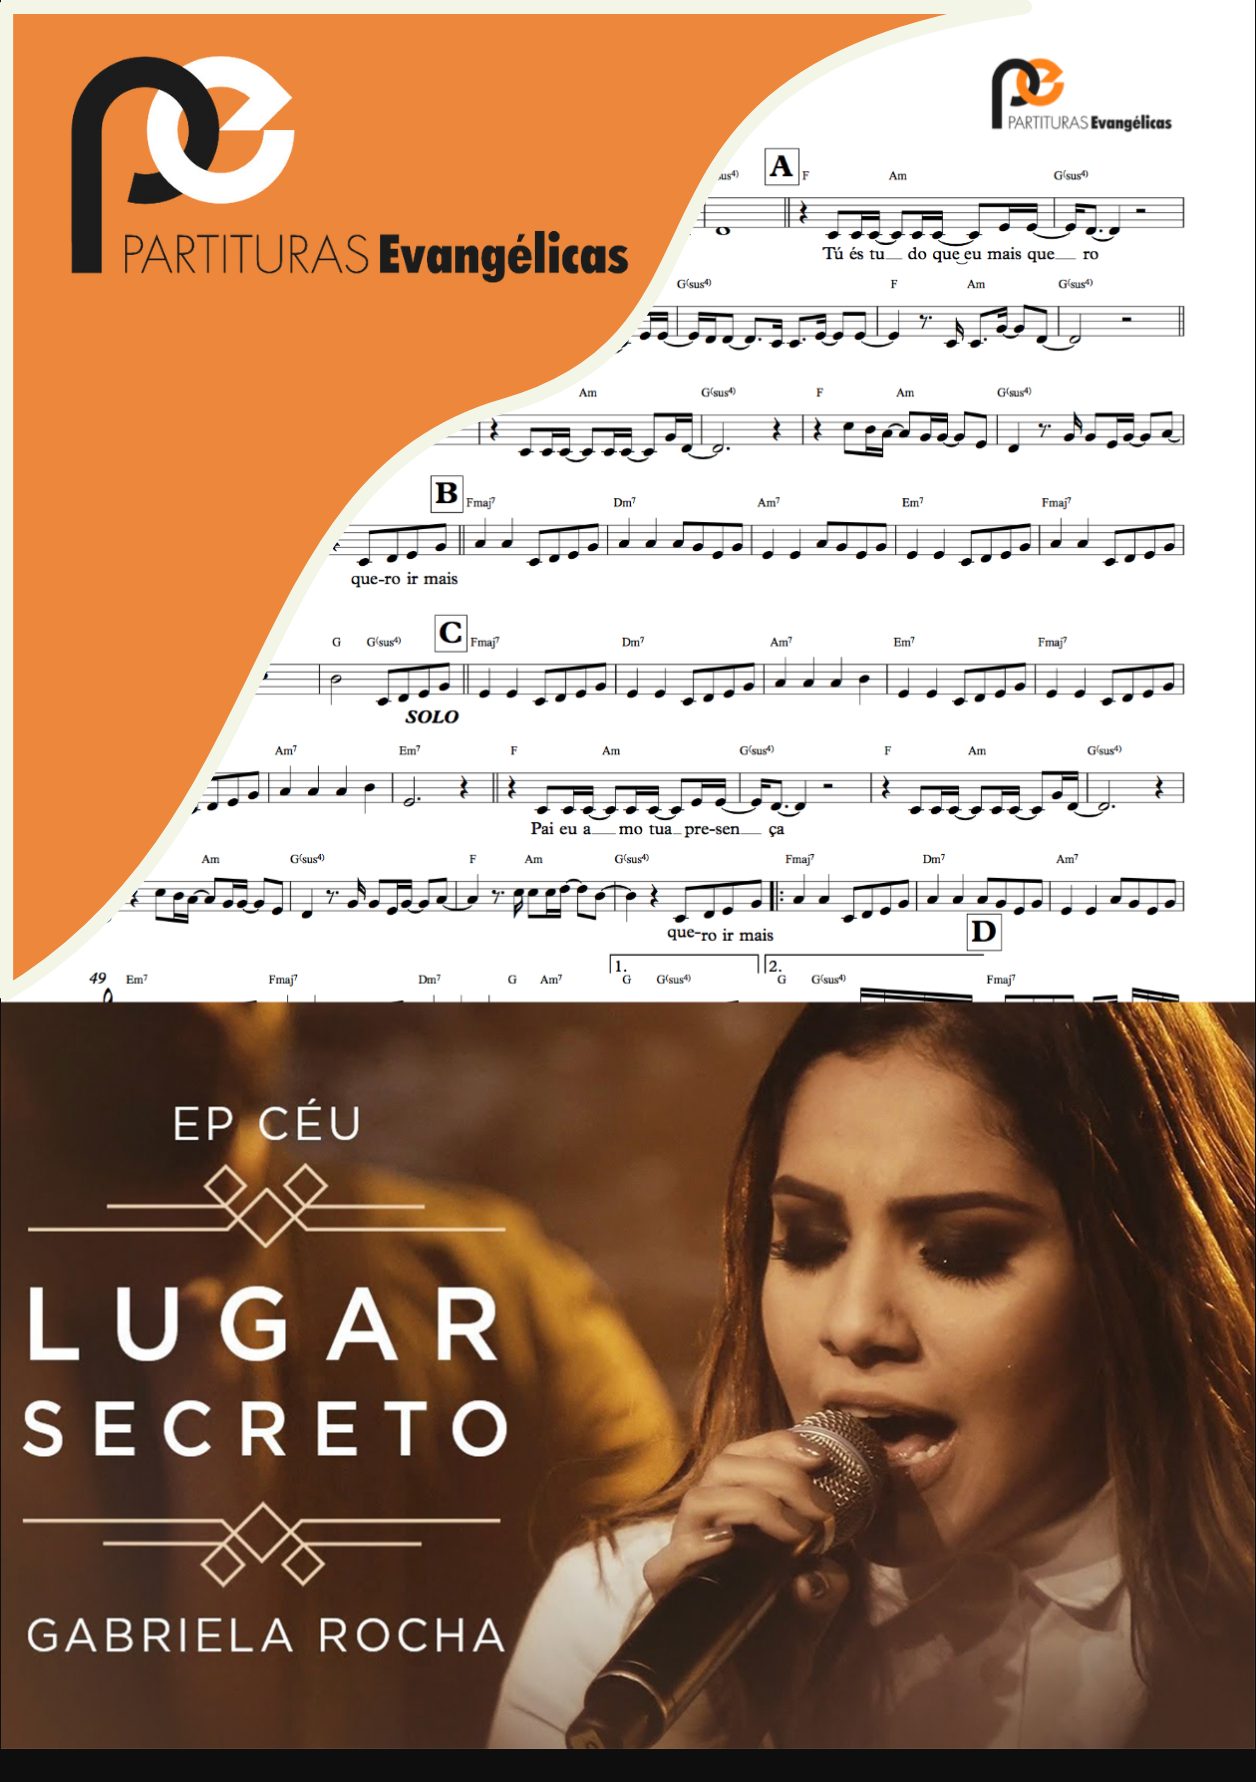 Lugar secreto - Gabriela Rocha Sheet music for Piano (Piano Duo)